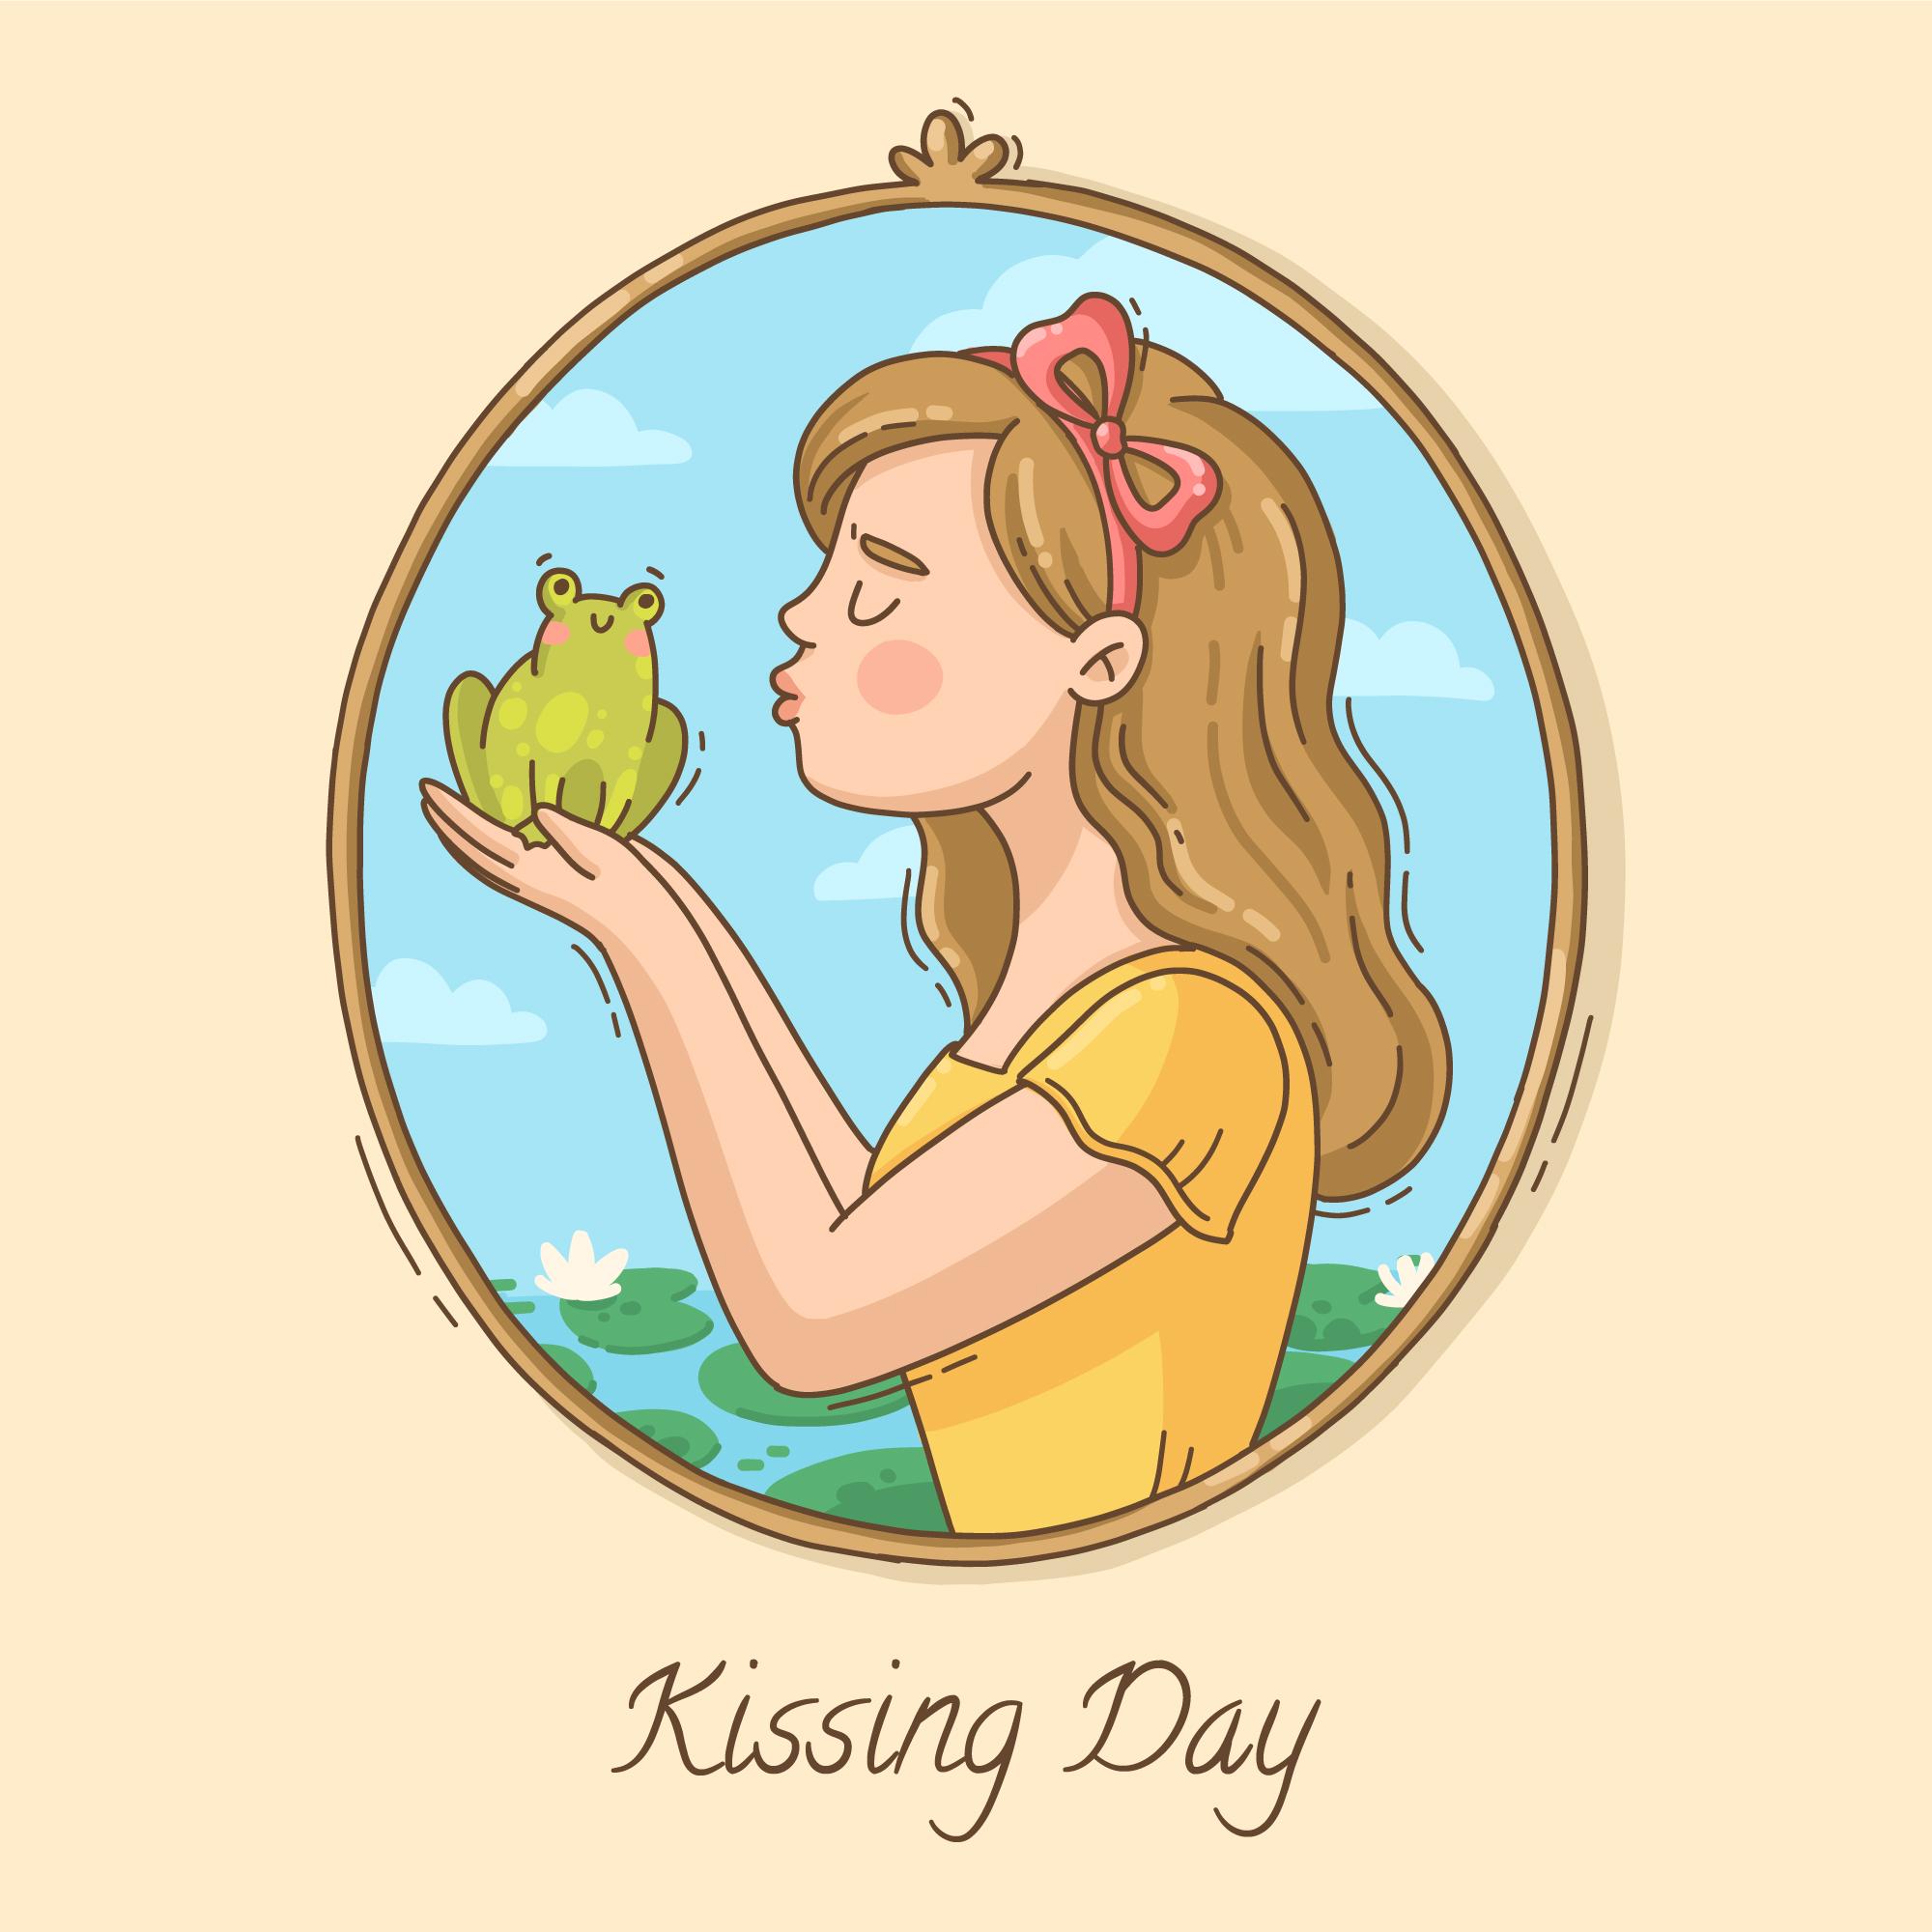 国际接吻日公主亲吻青蛙插图0